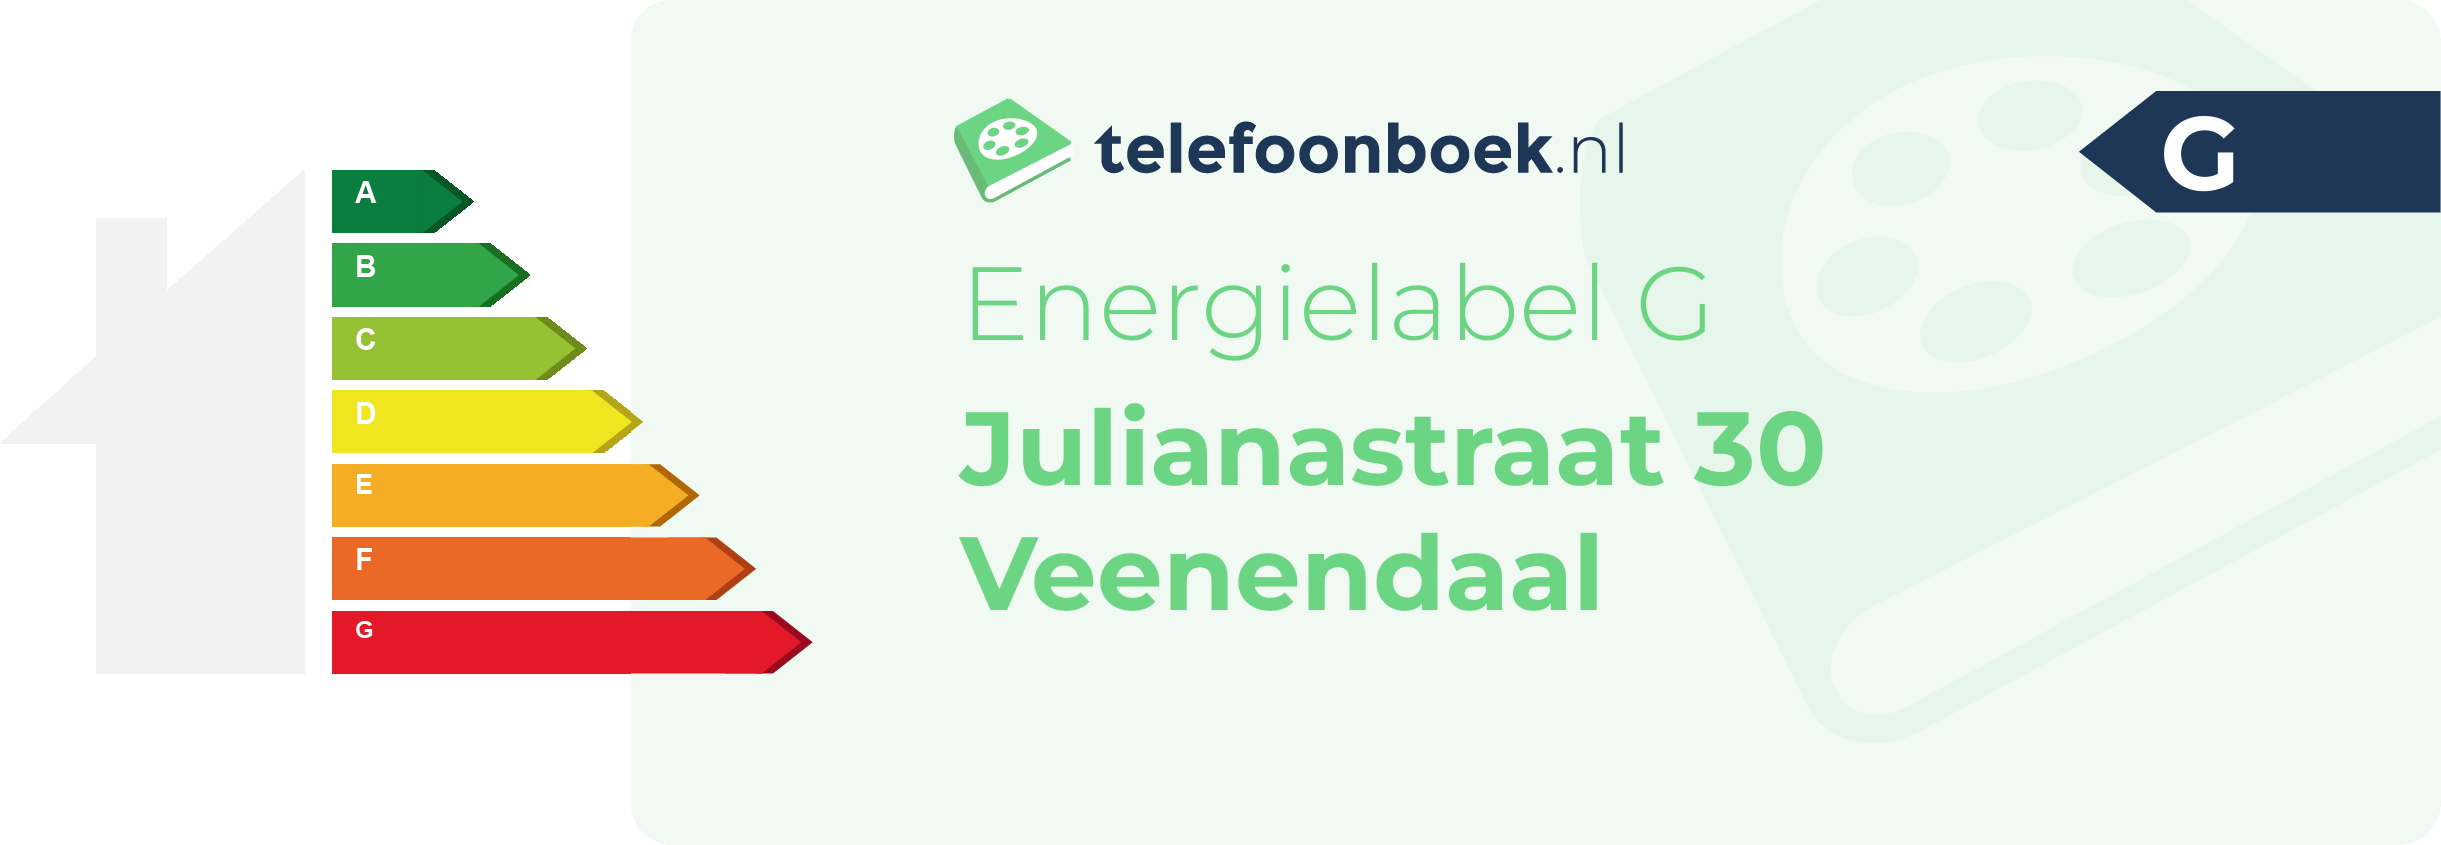 Energielabel Julianastraat 30 Veenendaal